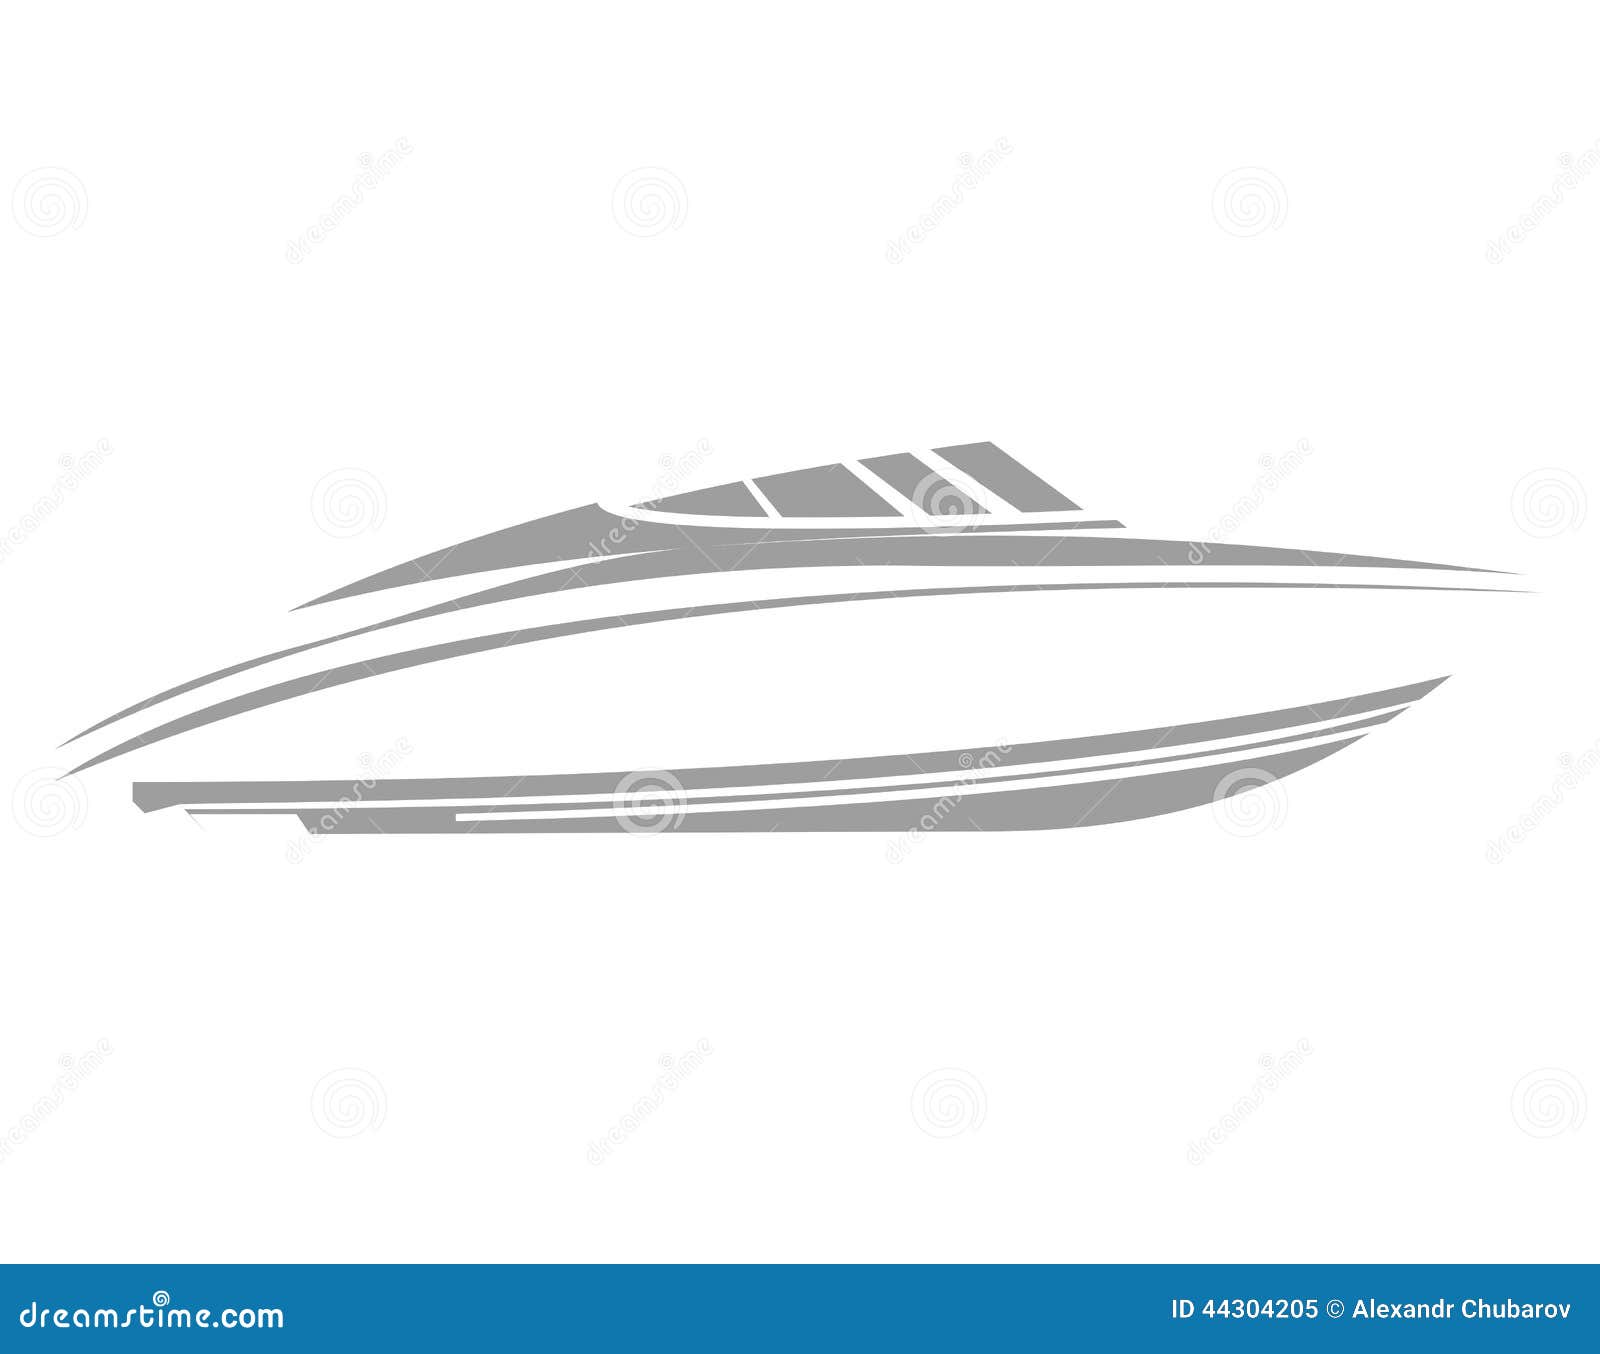 Logo Boat Stock Illustration - Image: 44304205